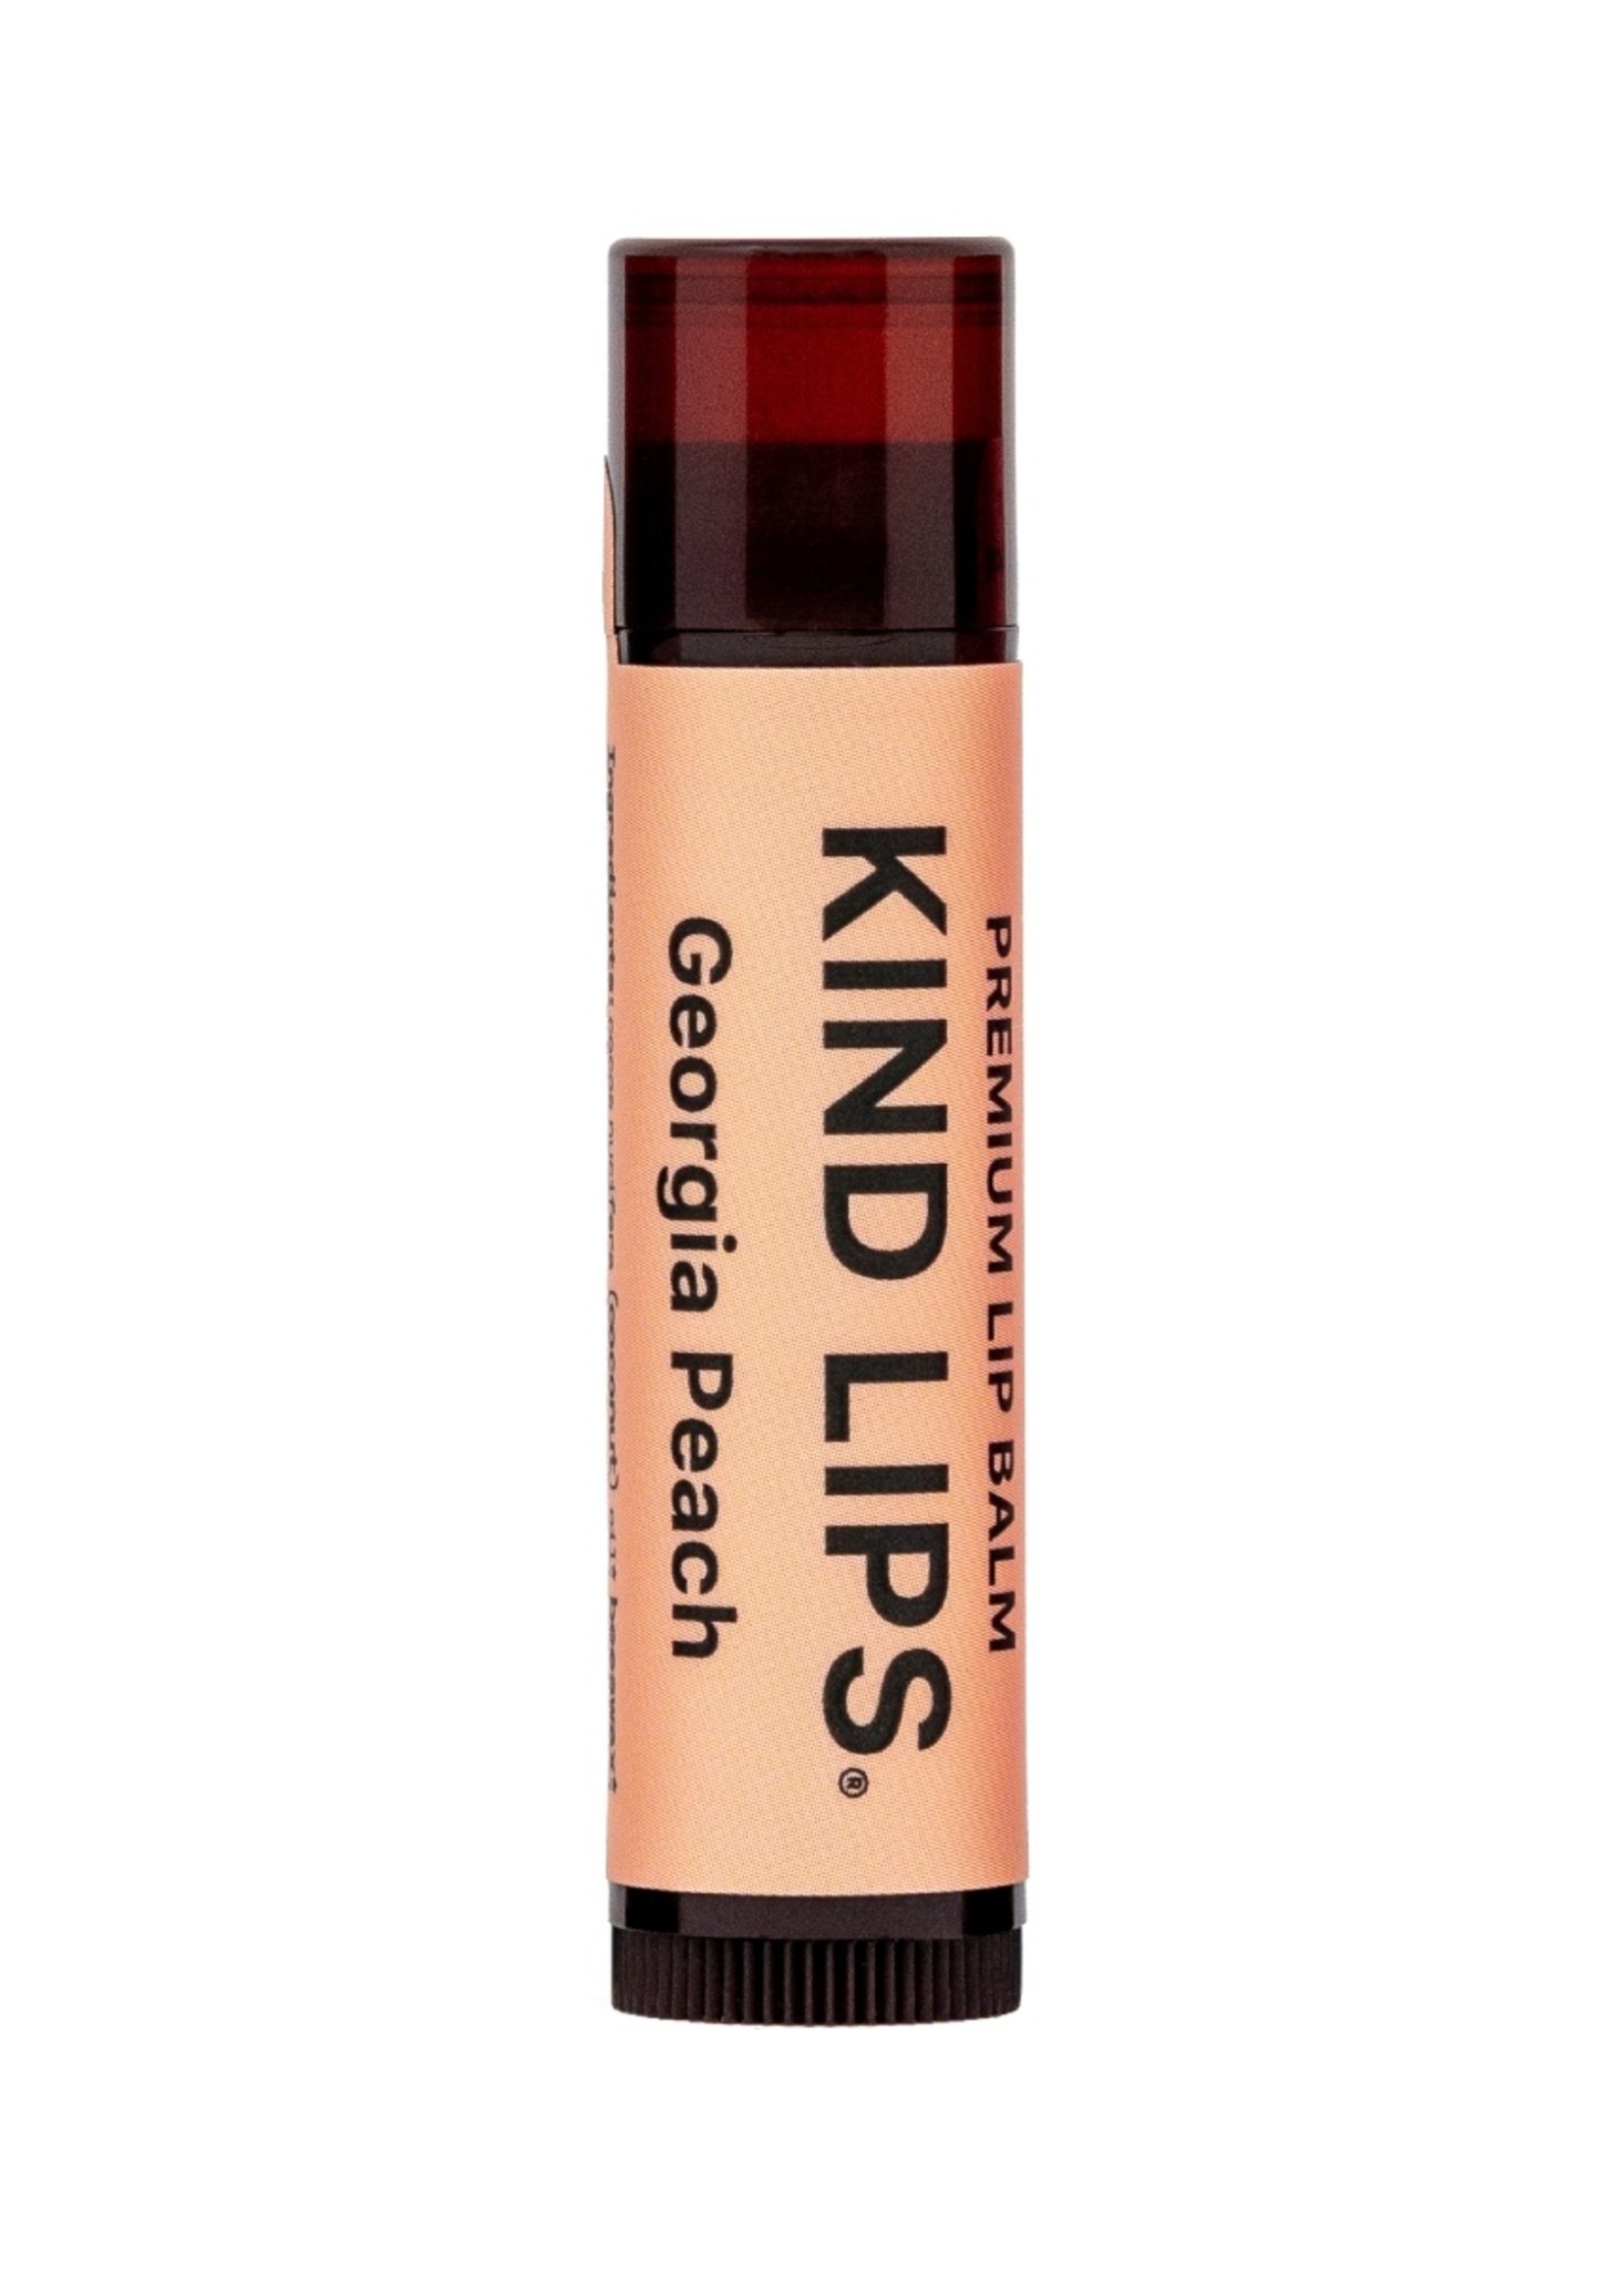 Kind LIps Kind Lips Chapstick